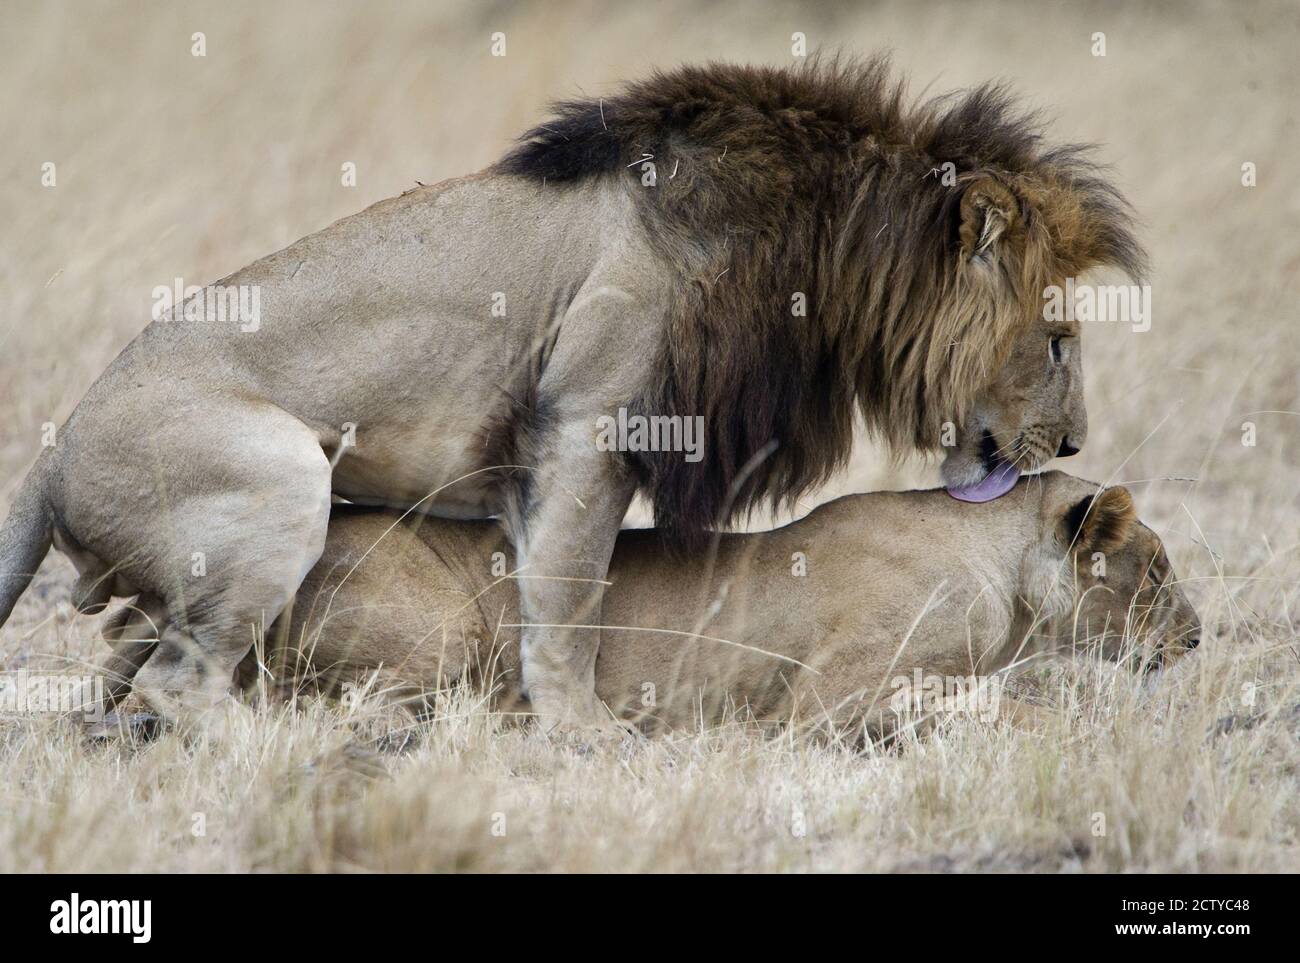 Paire de lions (Panthera leo) dans un champ, Kenya Banque D'Images